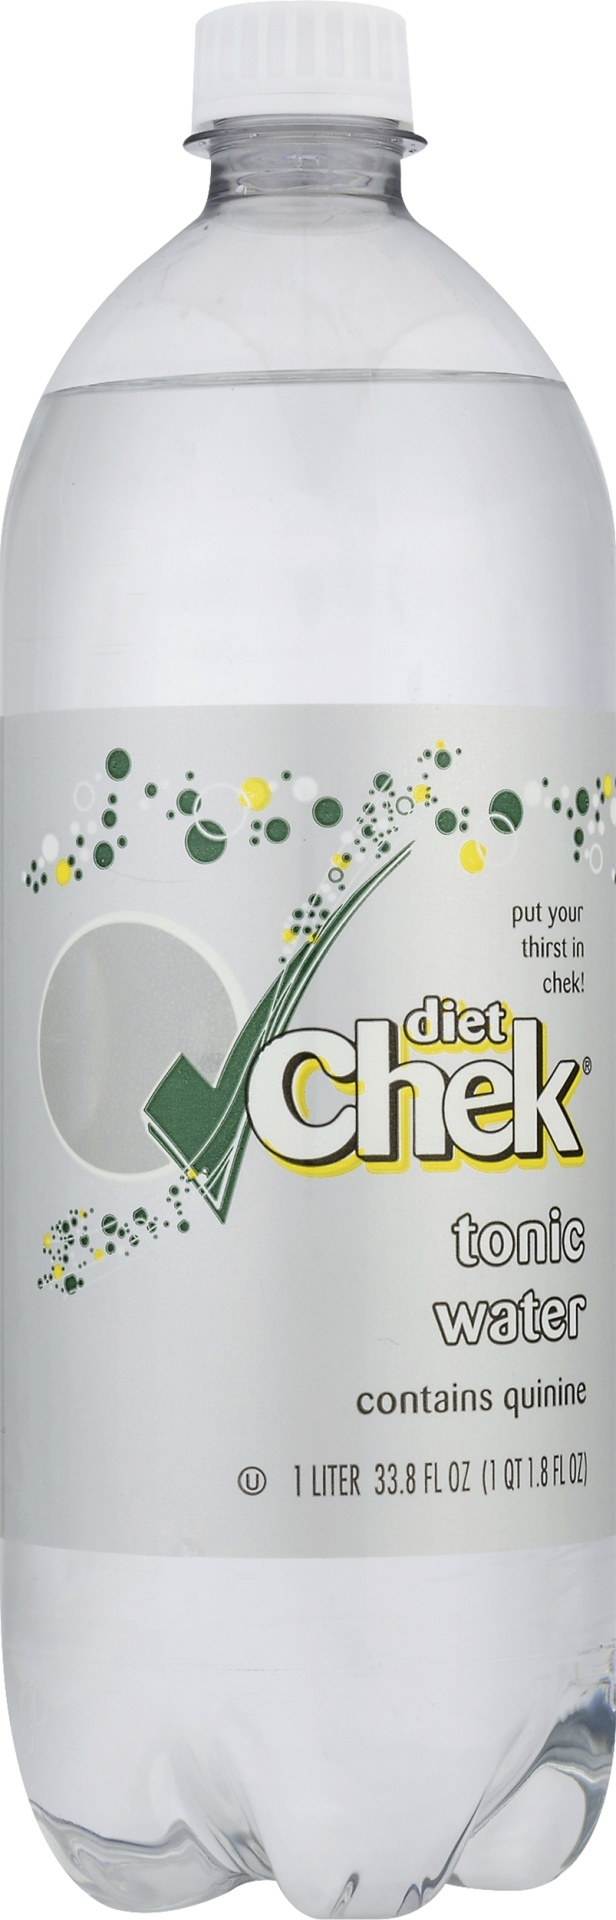 slide 1 of 1, Chek Diet Tonic Water, 1 liter